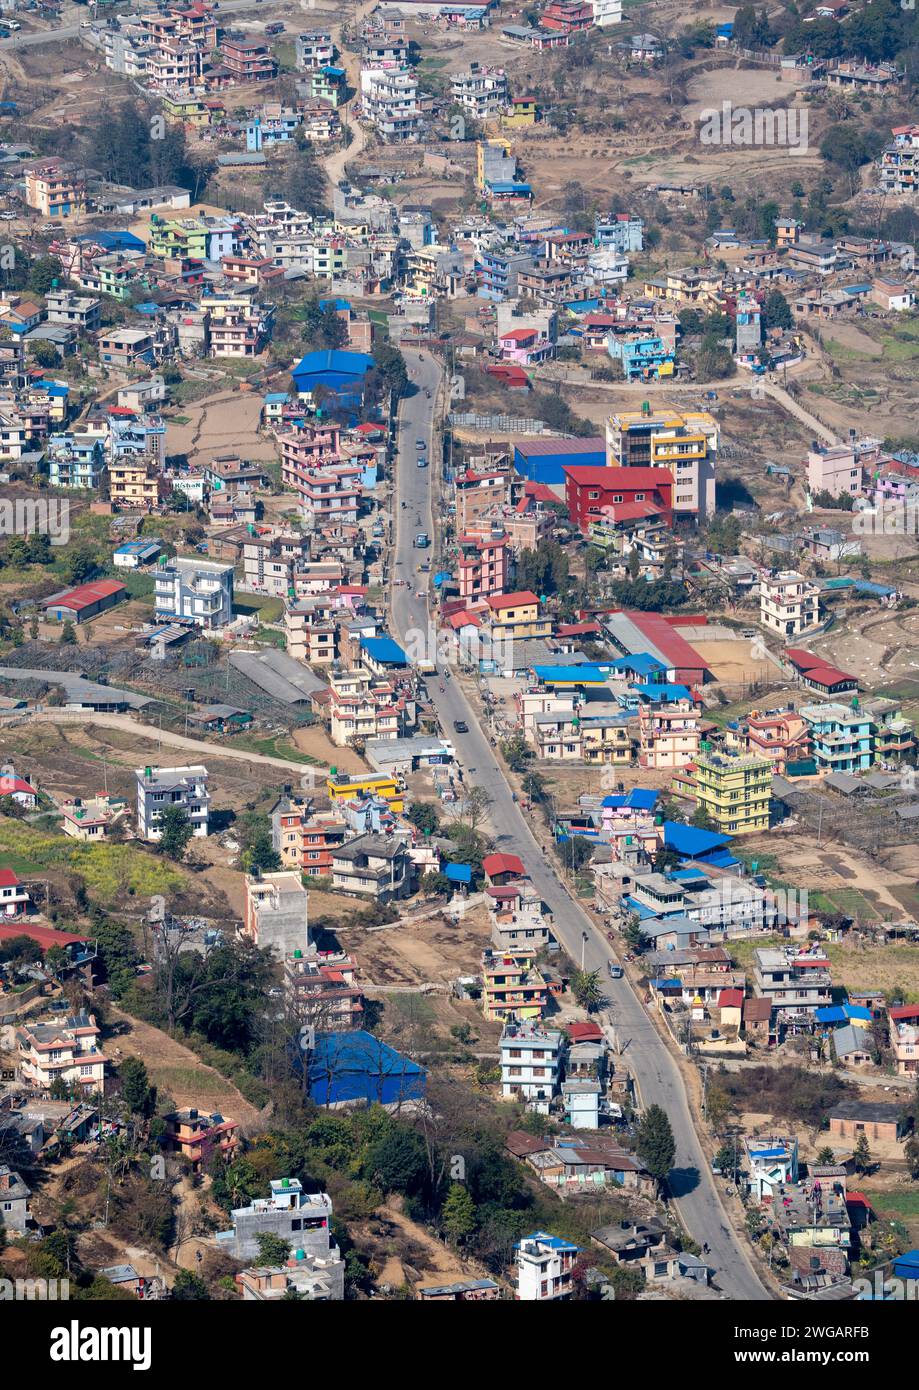 Ein Blick aus der Vogelperspektive auf eine geschäftige Stadtlandschaft mit Verkehr auf den Straßen in Kathmandu, Nepal. Stockfoto